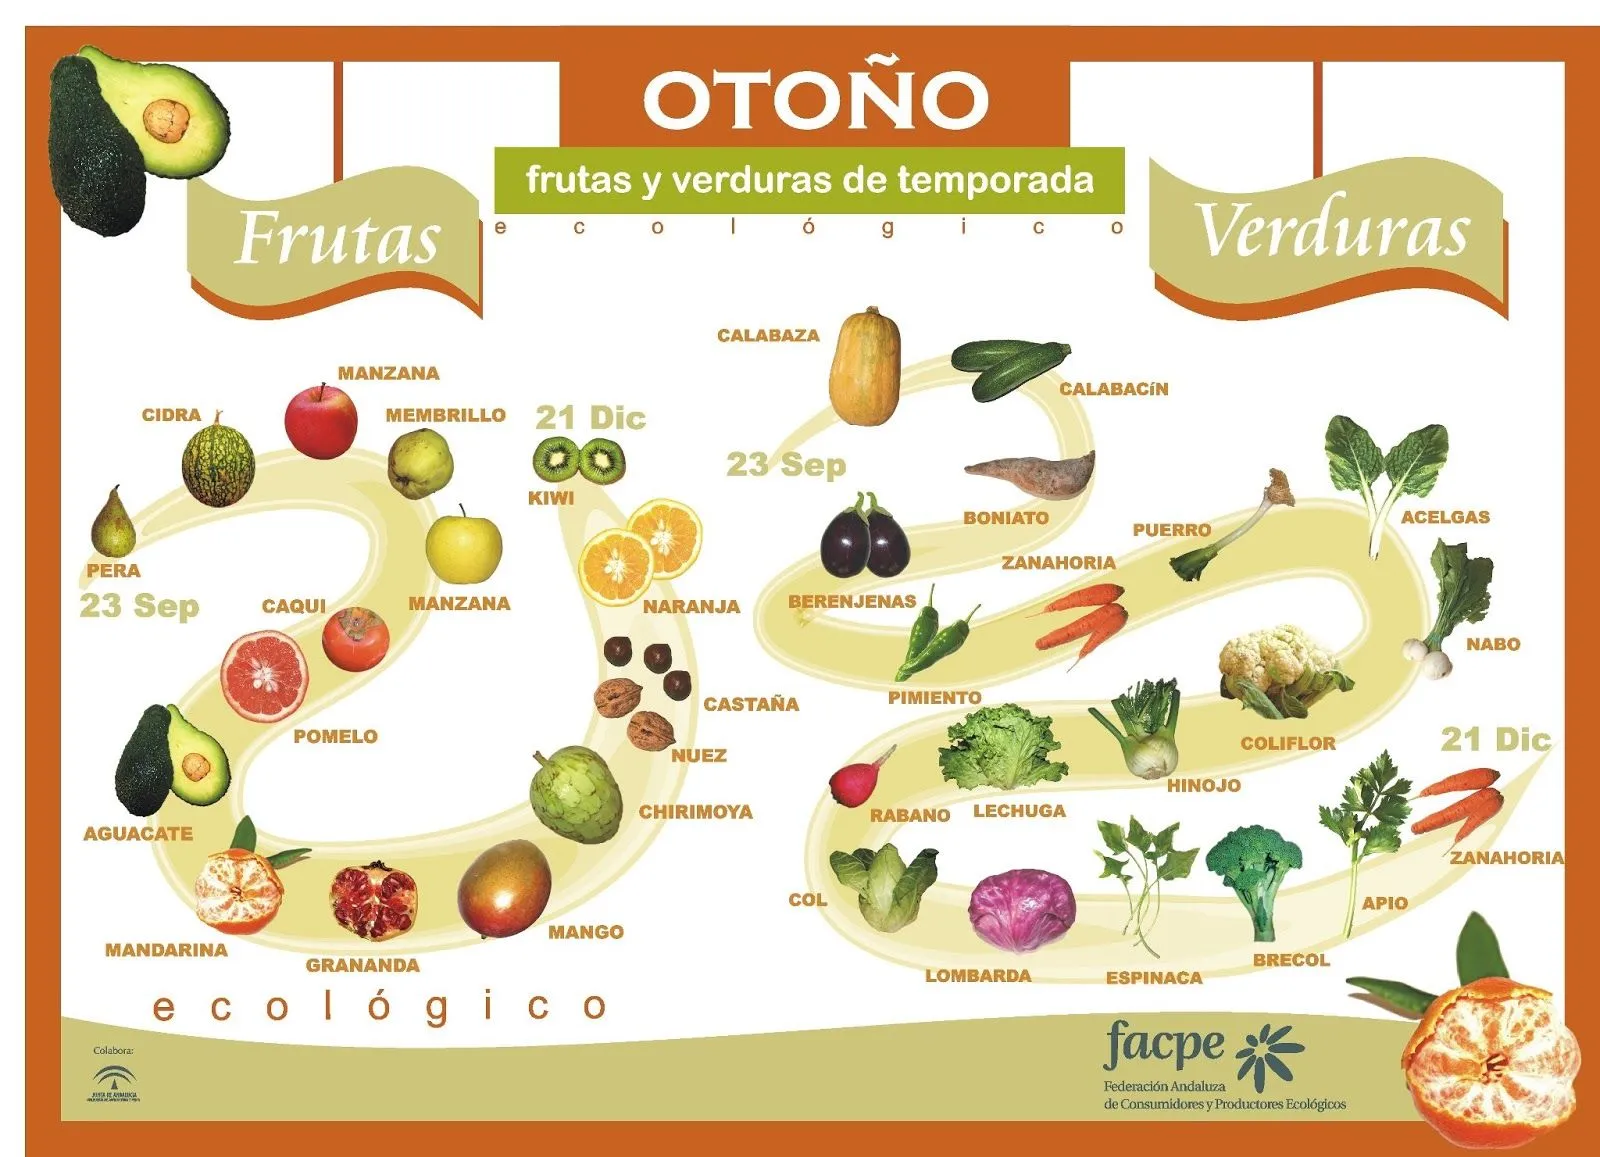 frutas-y-verduras-de-otoc3b1o.jpg